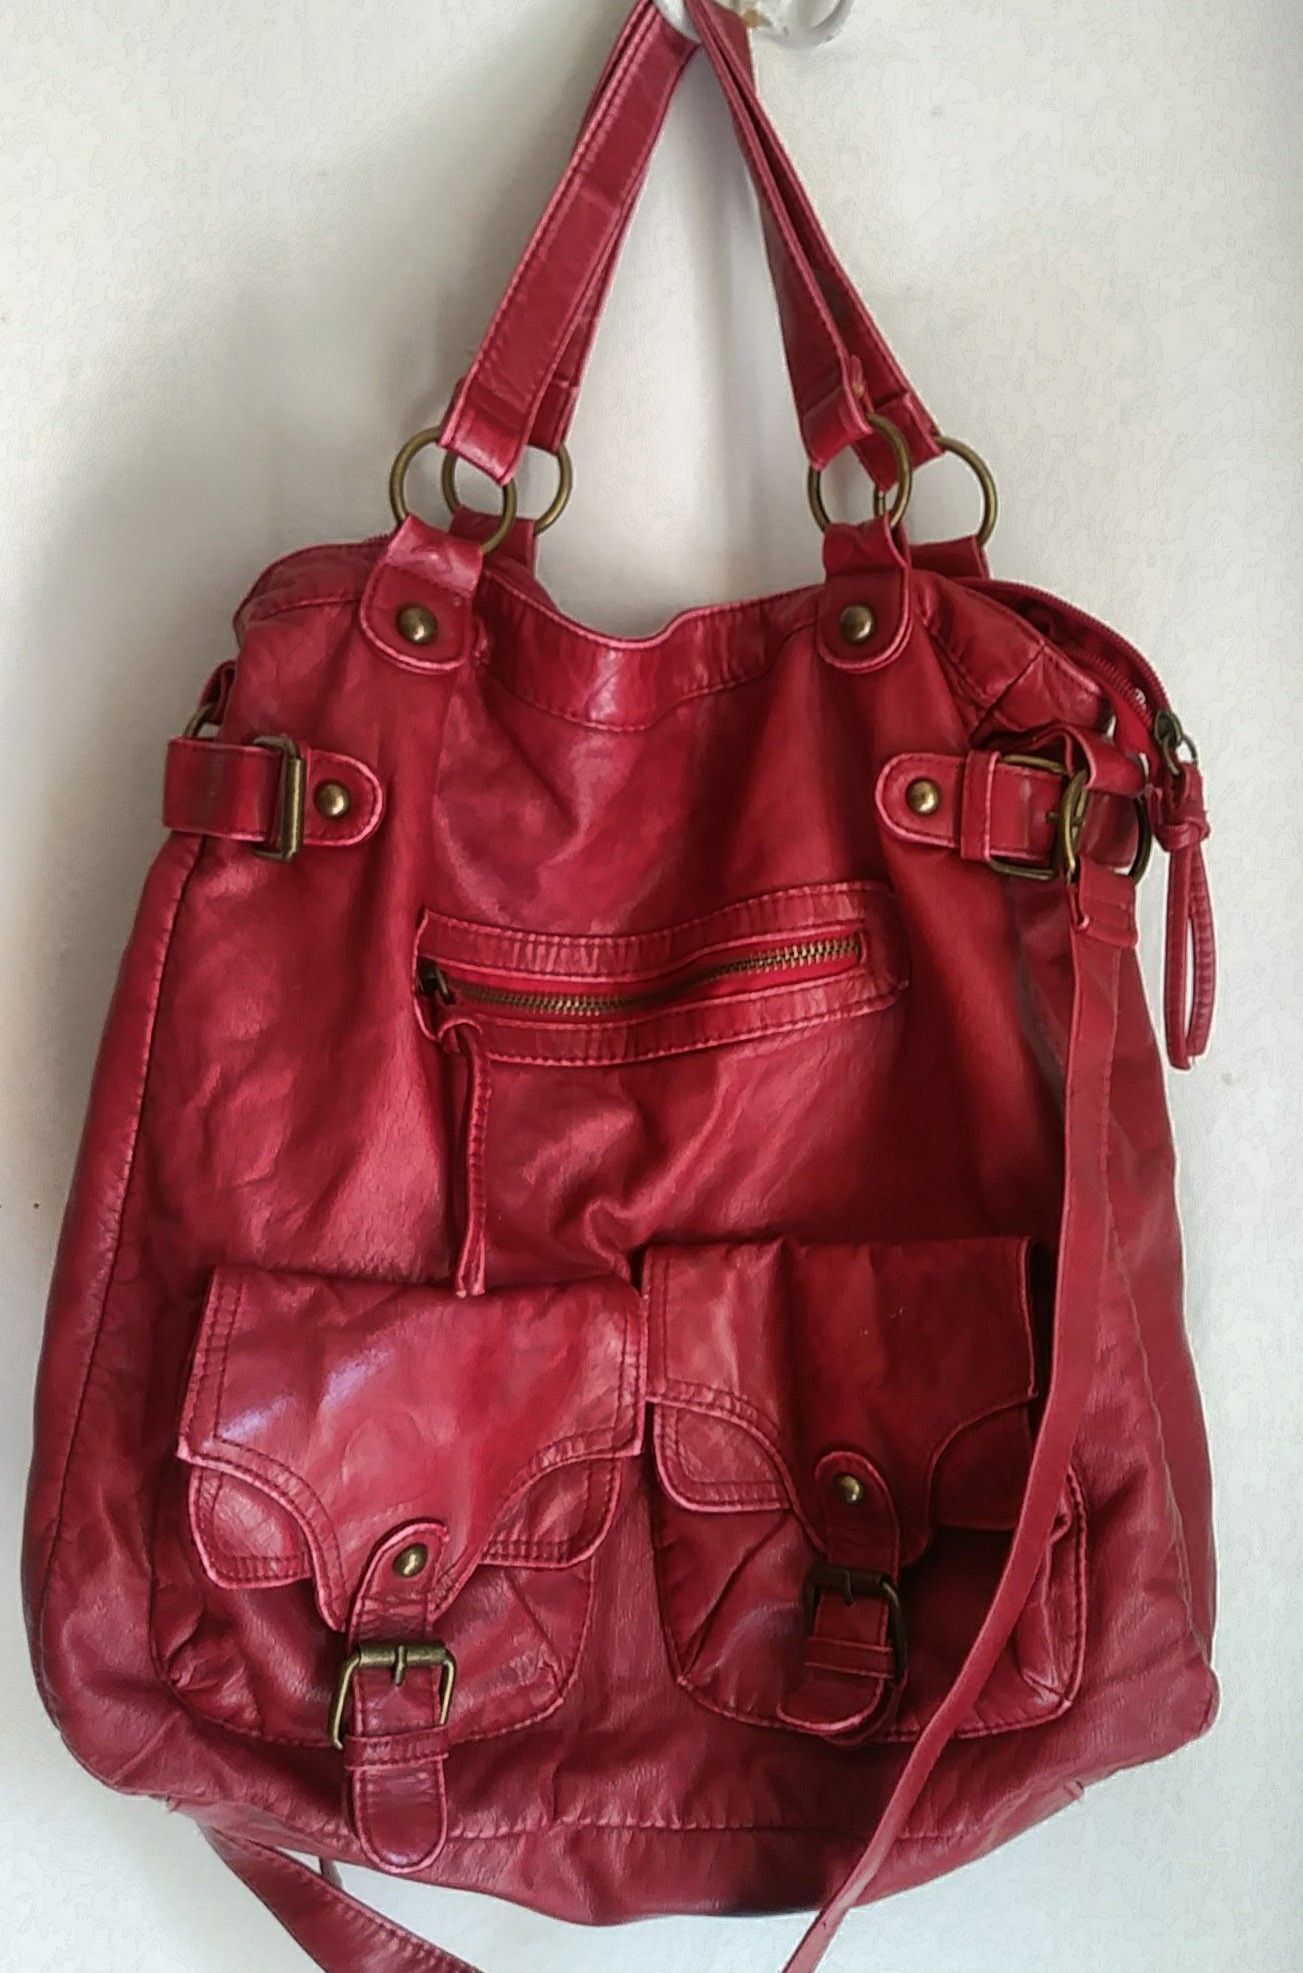 Charming Charlie Red Handbag Purse